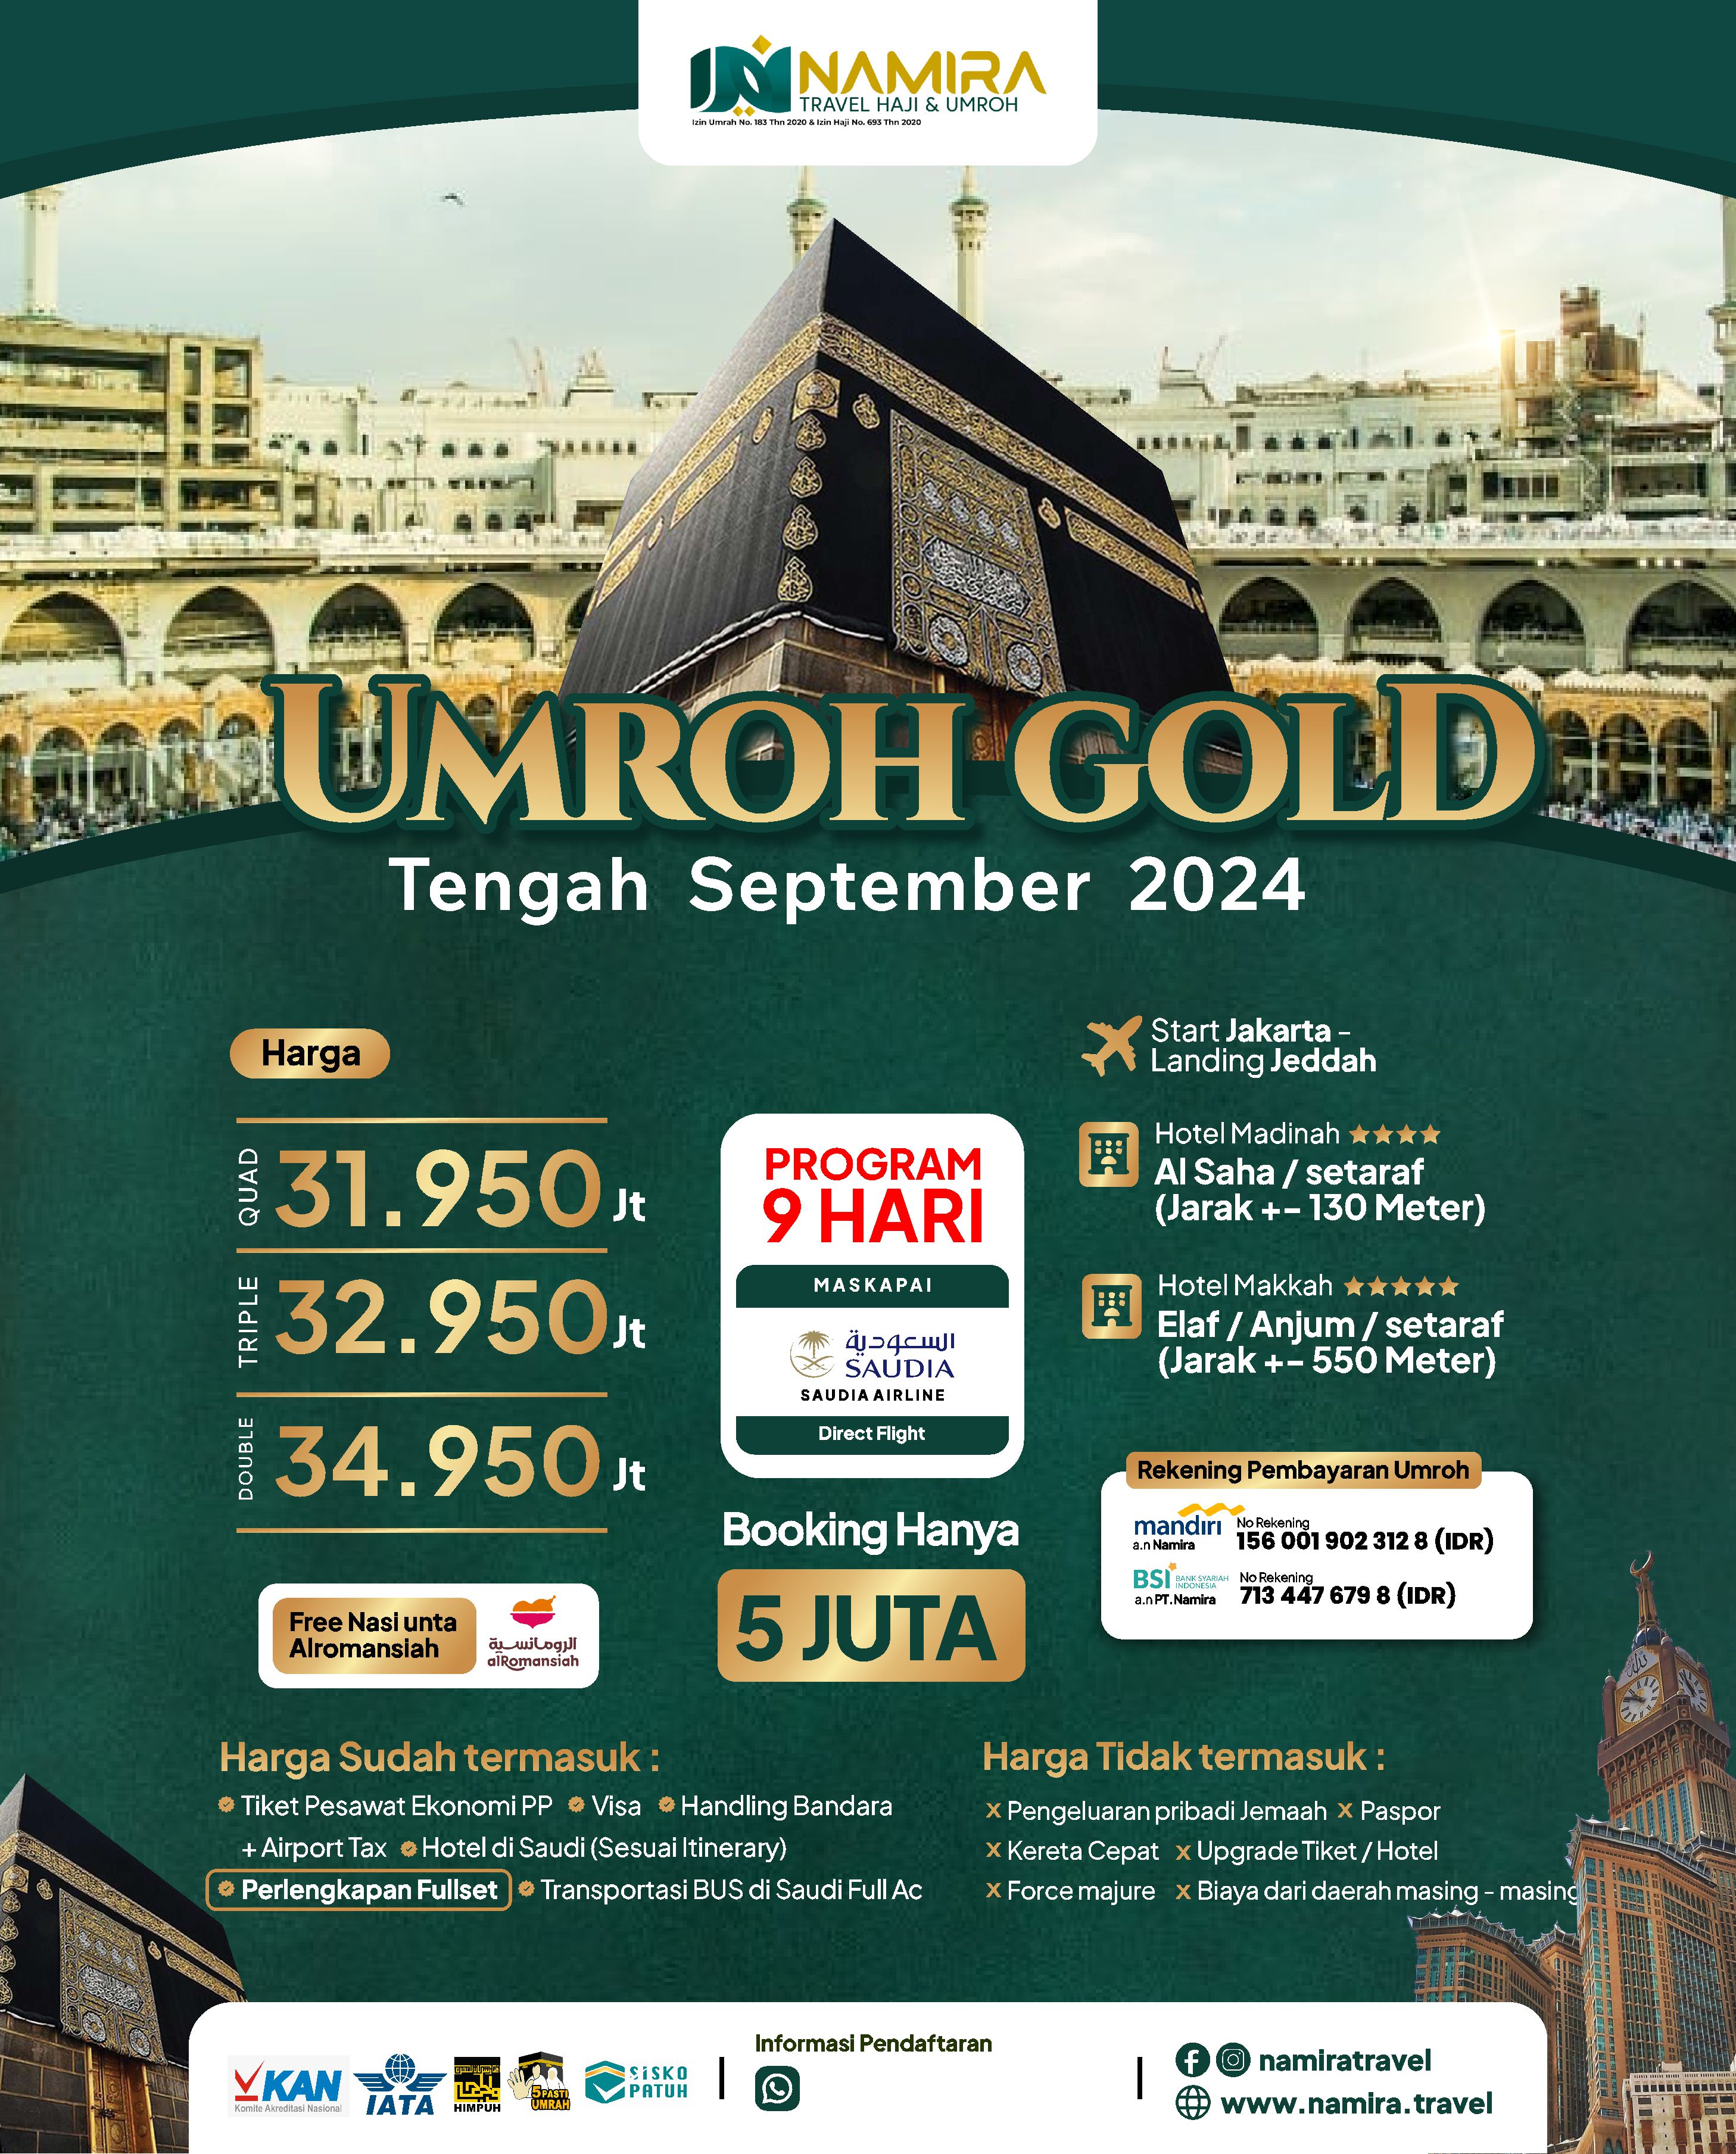 Paket Umroh Gold Tengah September 2024